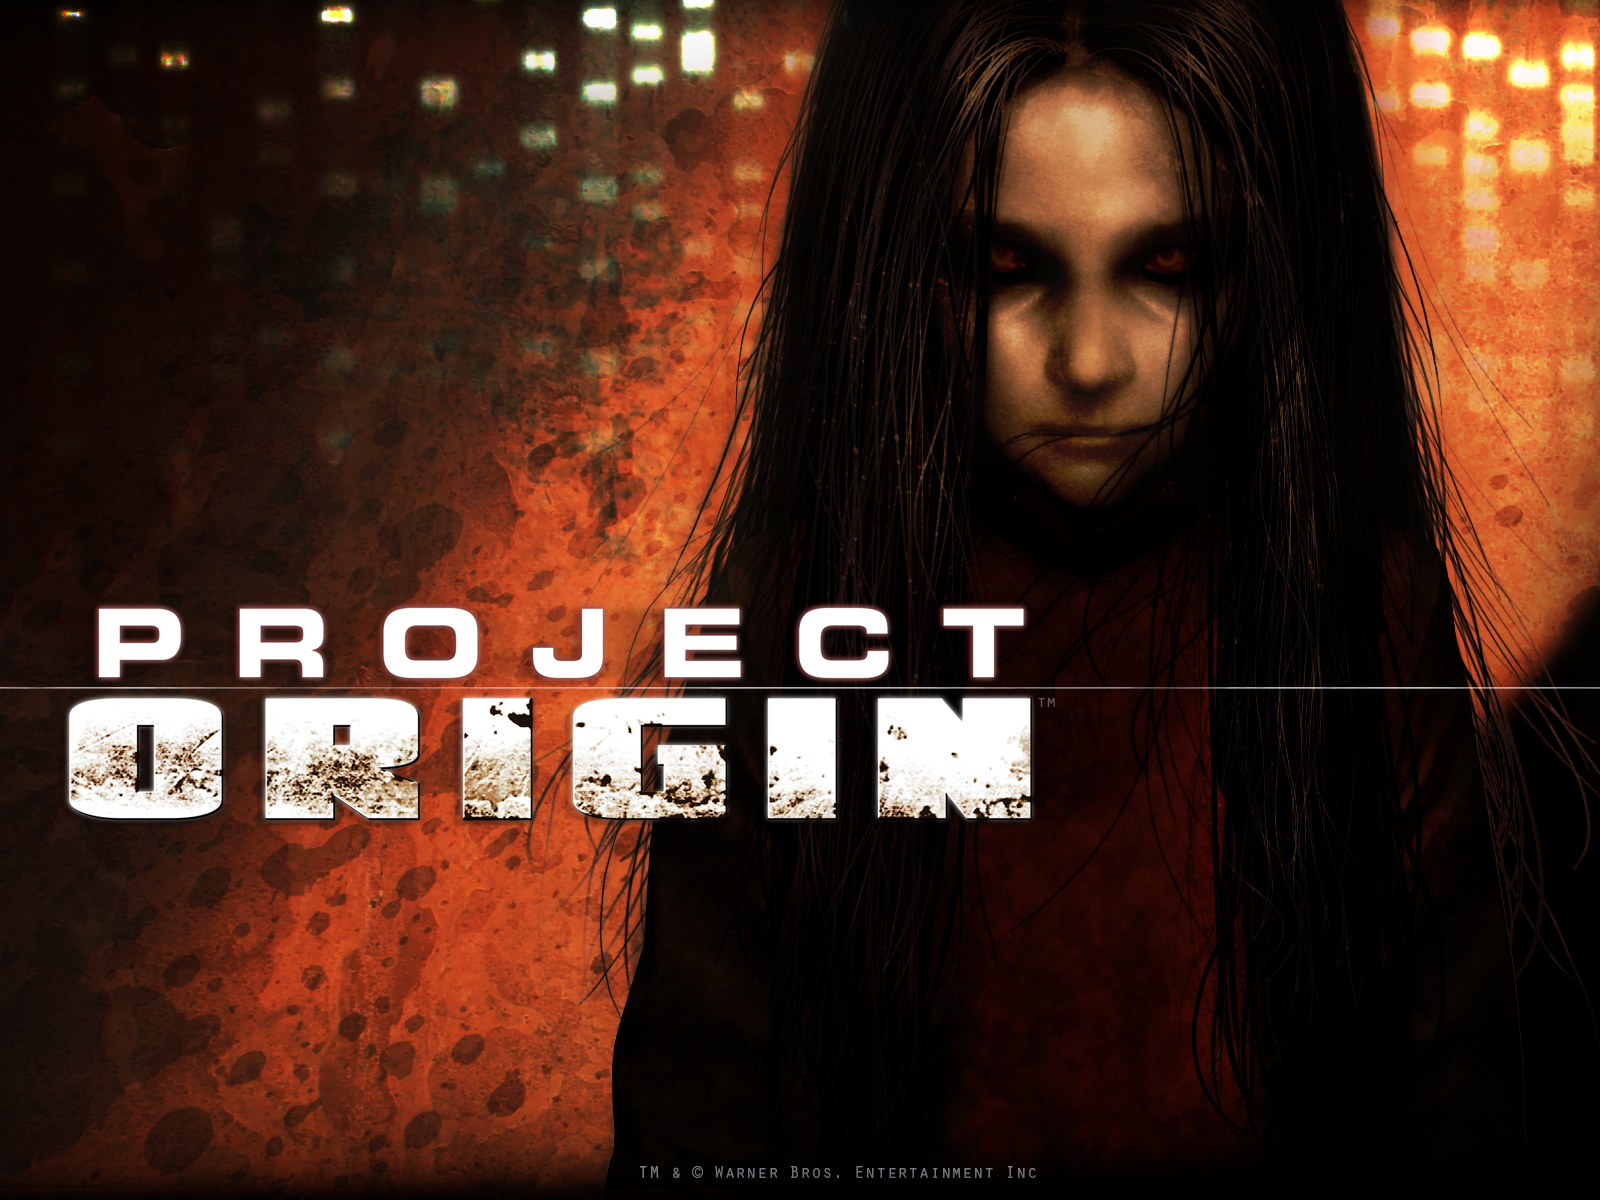 Video Game F.E.A.R. 2: Project Origin HD Wallpaper | Background Image